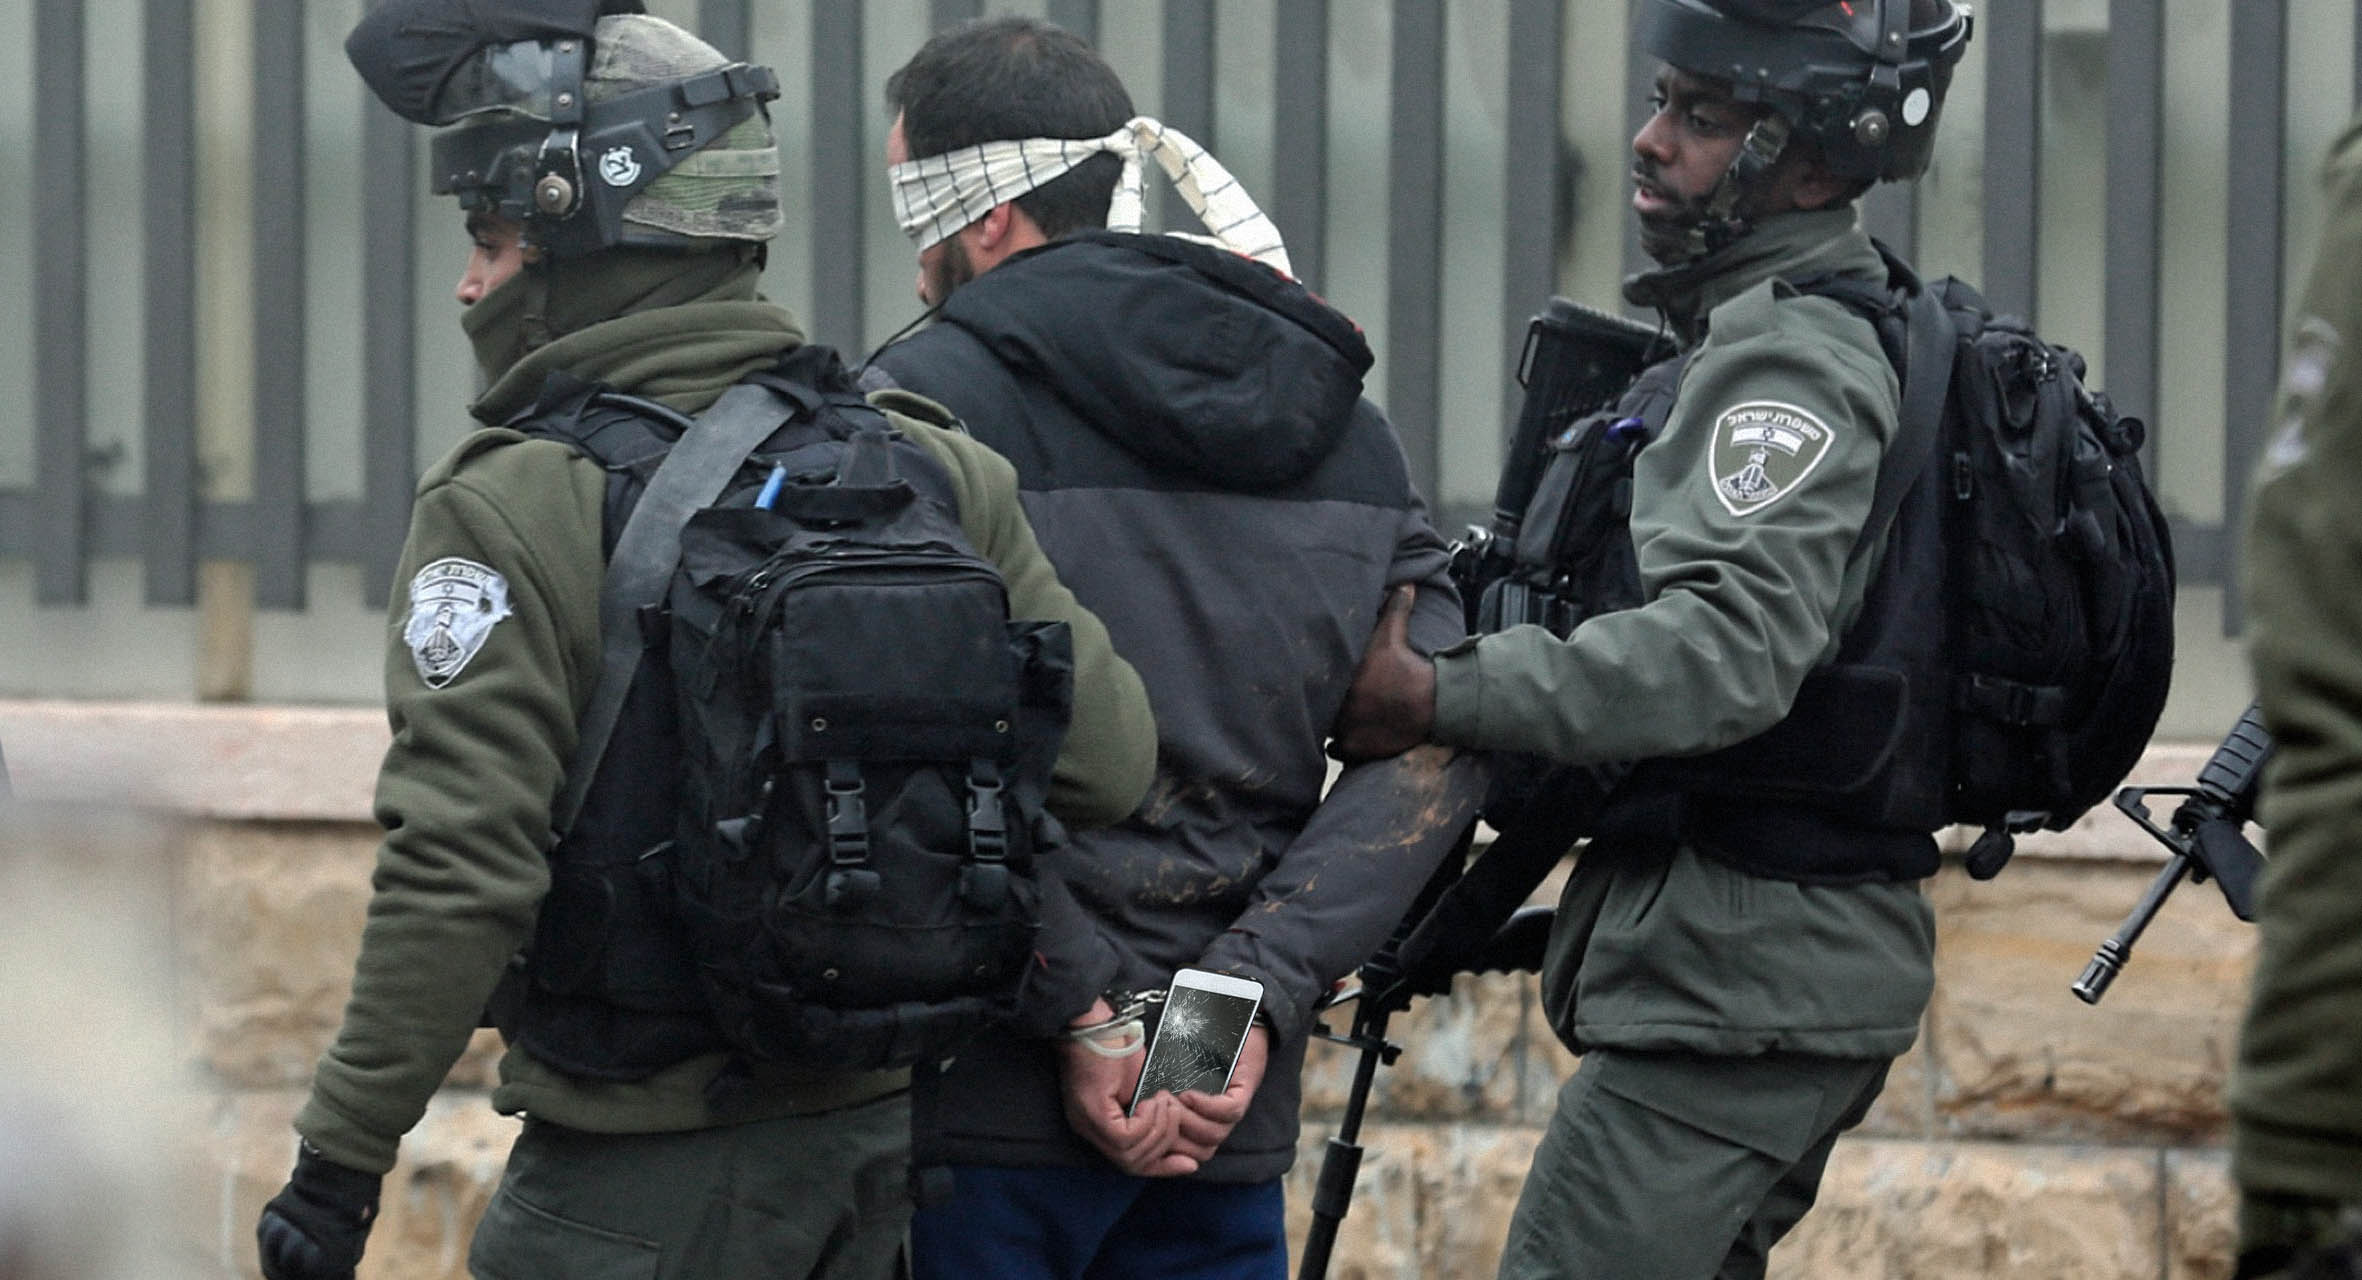 صورة إسرائيل تعتقل مجموعة من فلسطينيي الداخل بتهمة التواصل مع عرب لأغراض غير التطبيع